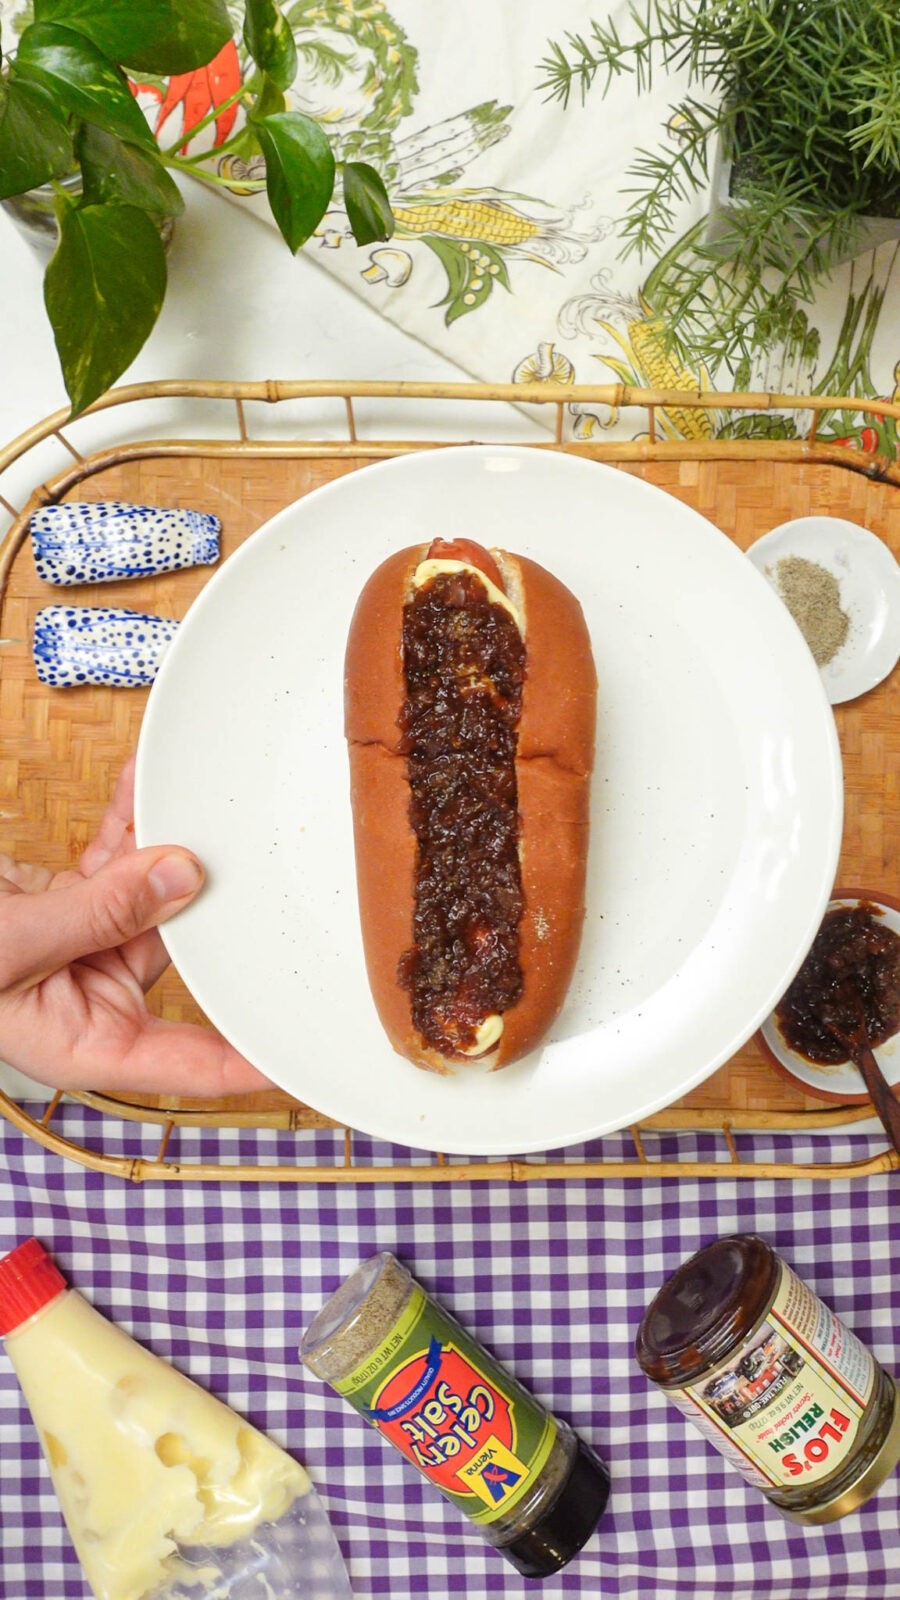 Flo's Special Hot Dog Relish Recipe 